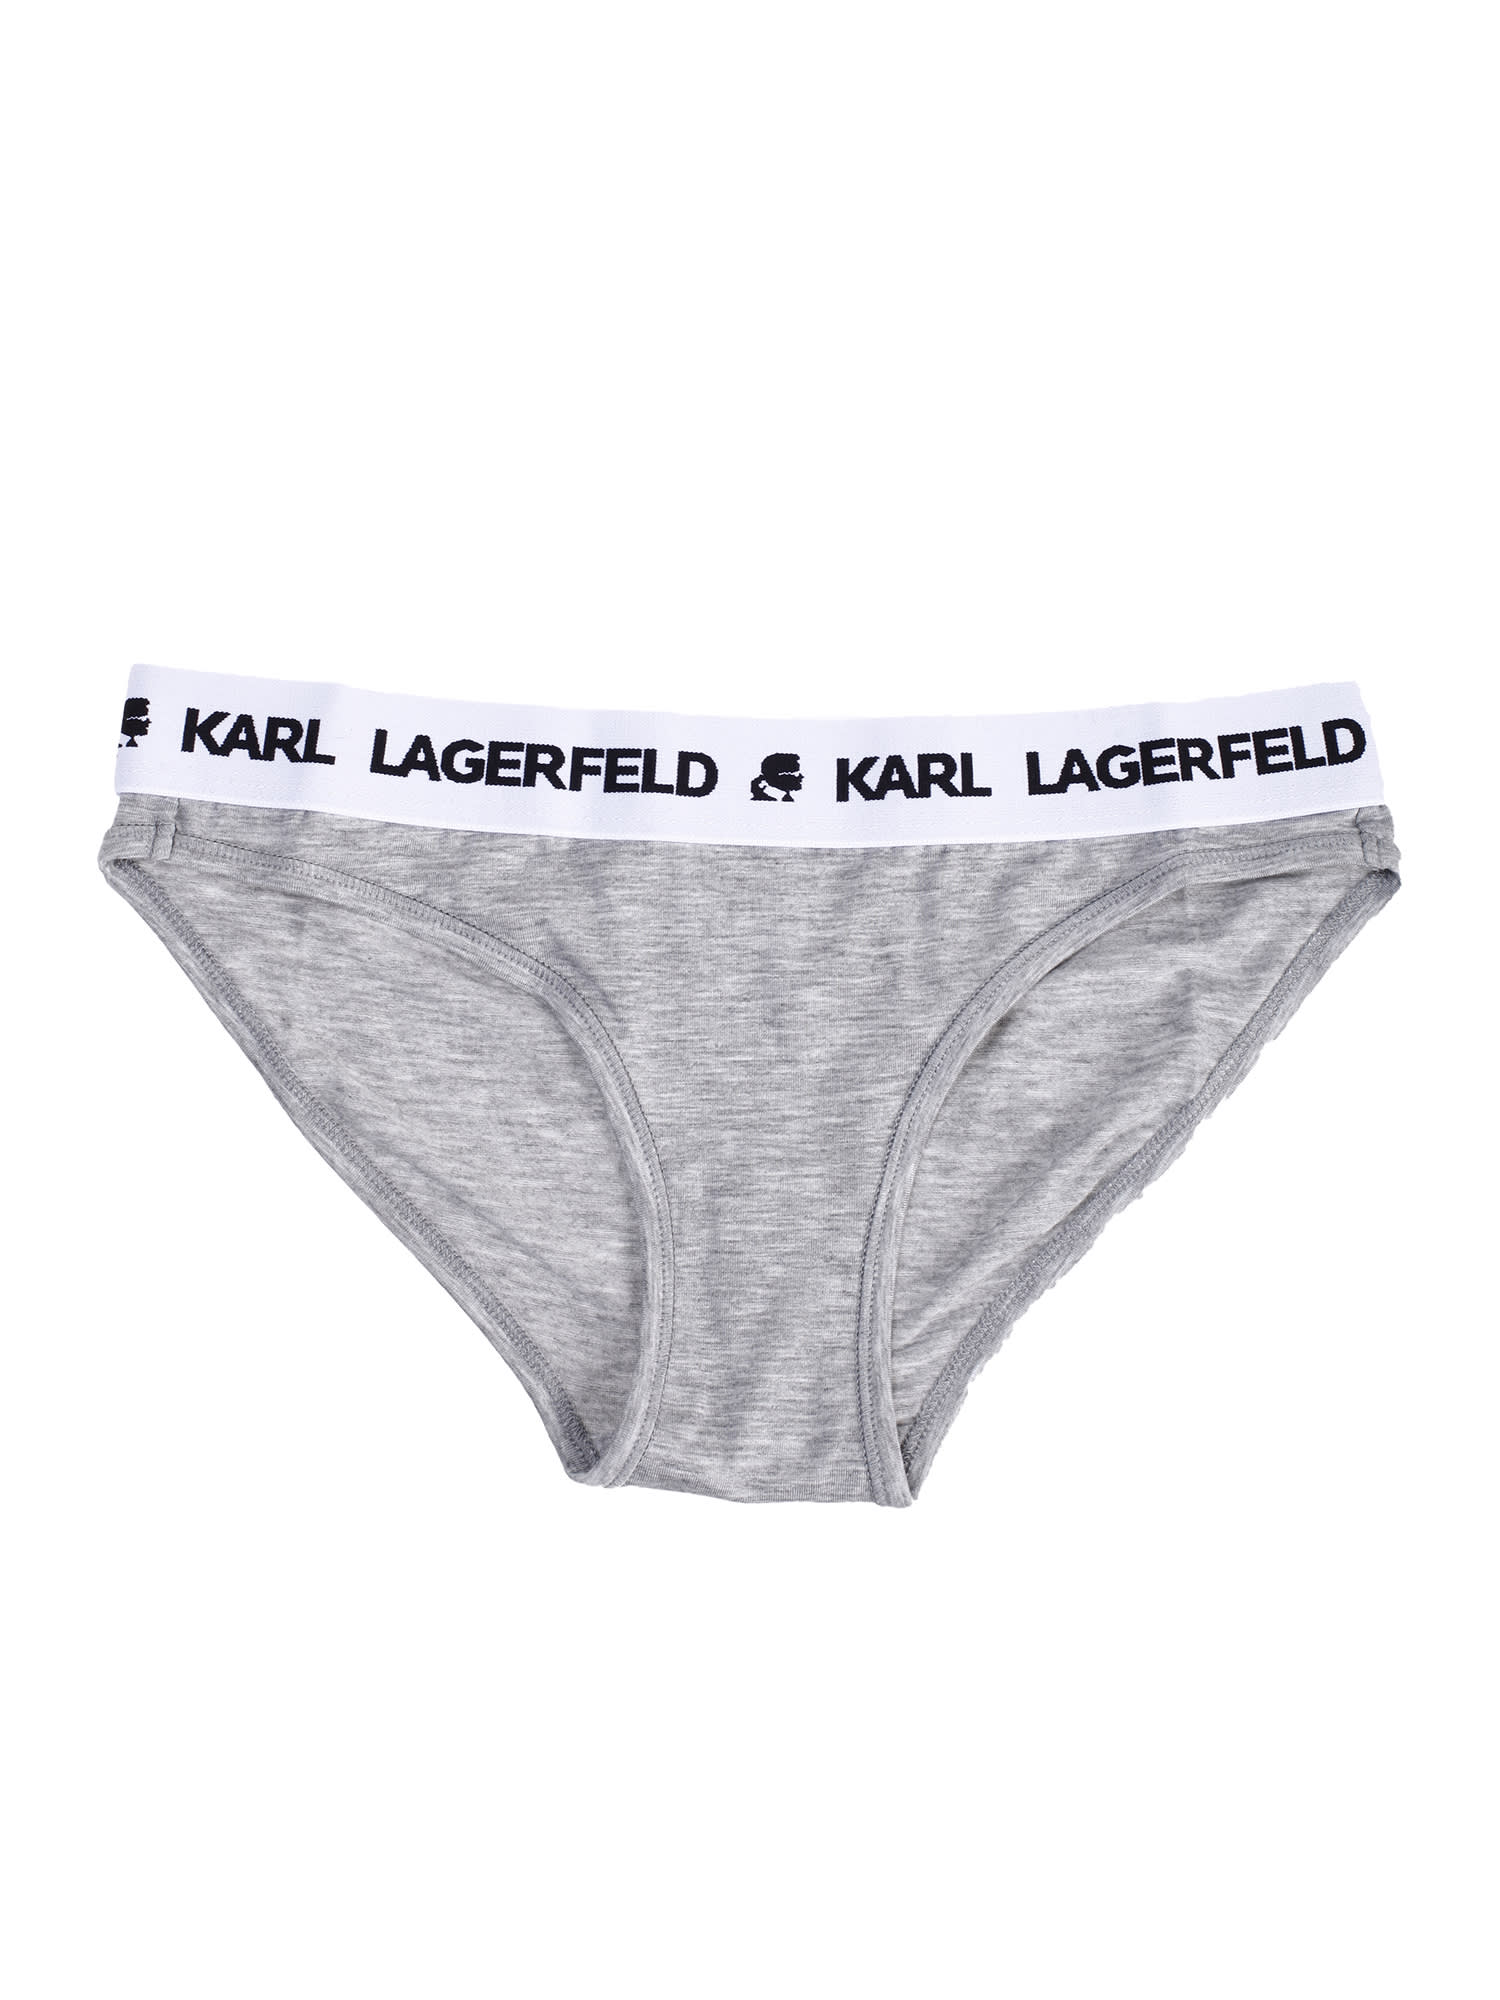 Karl Lagerfeld stretch briefs underwear